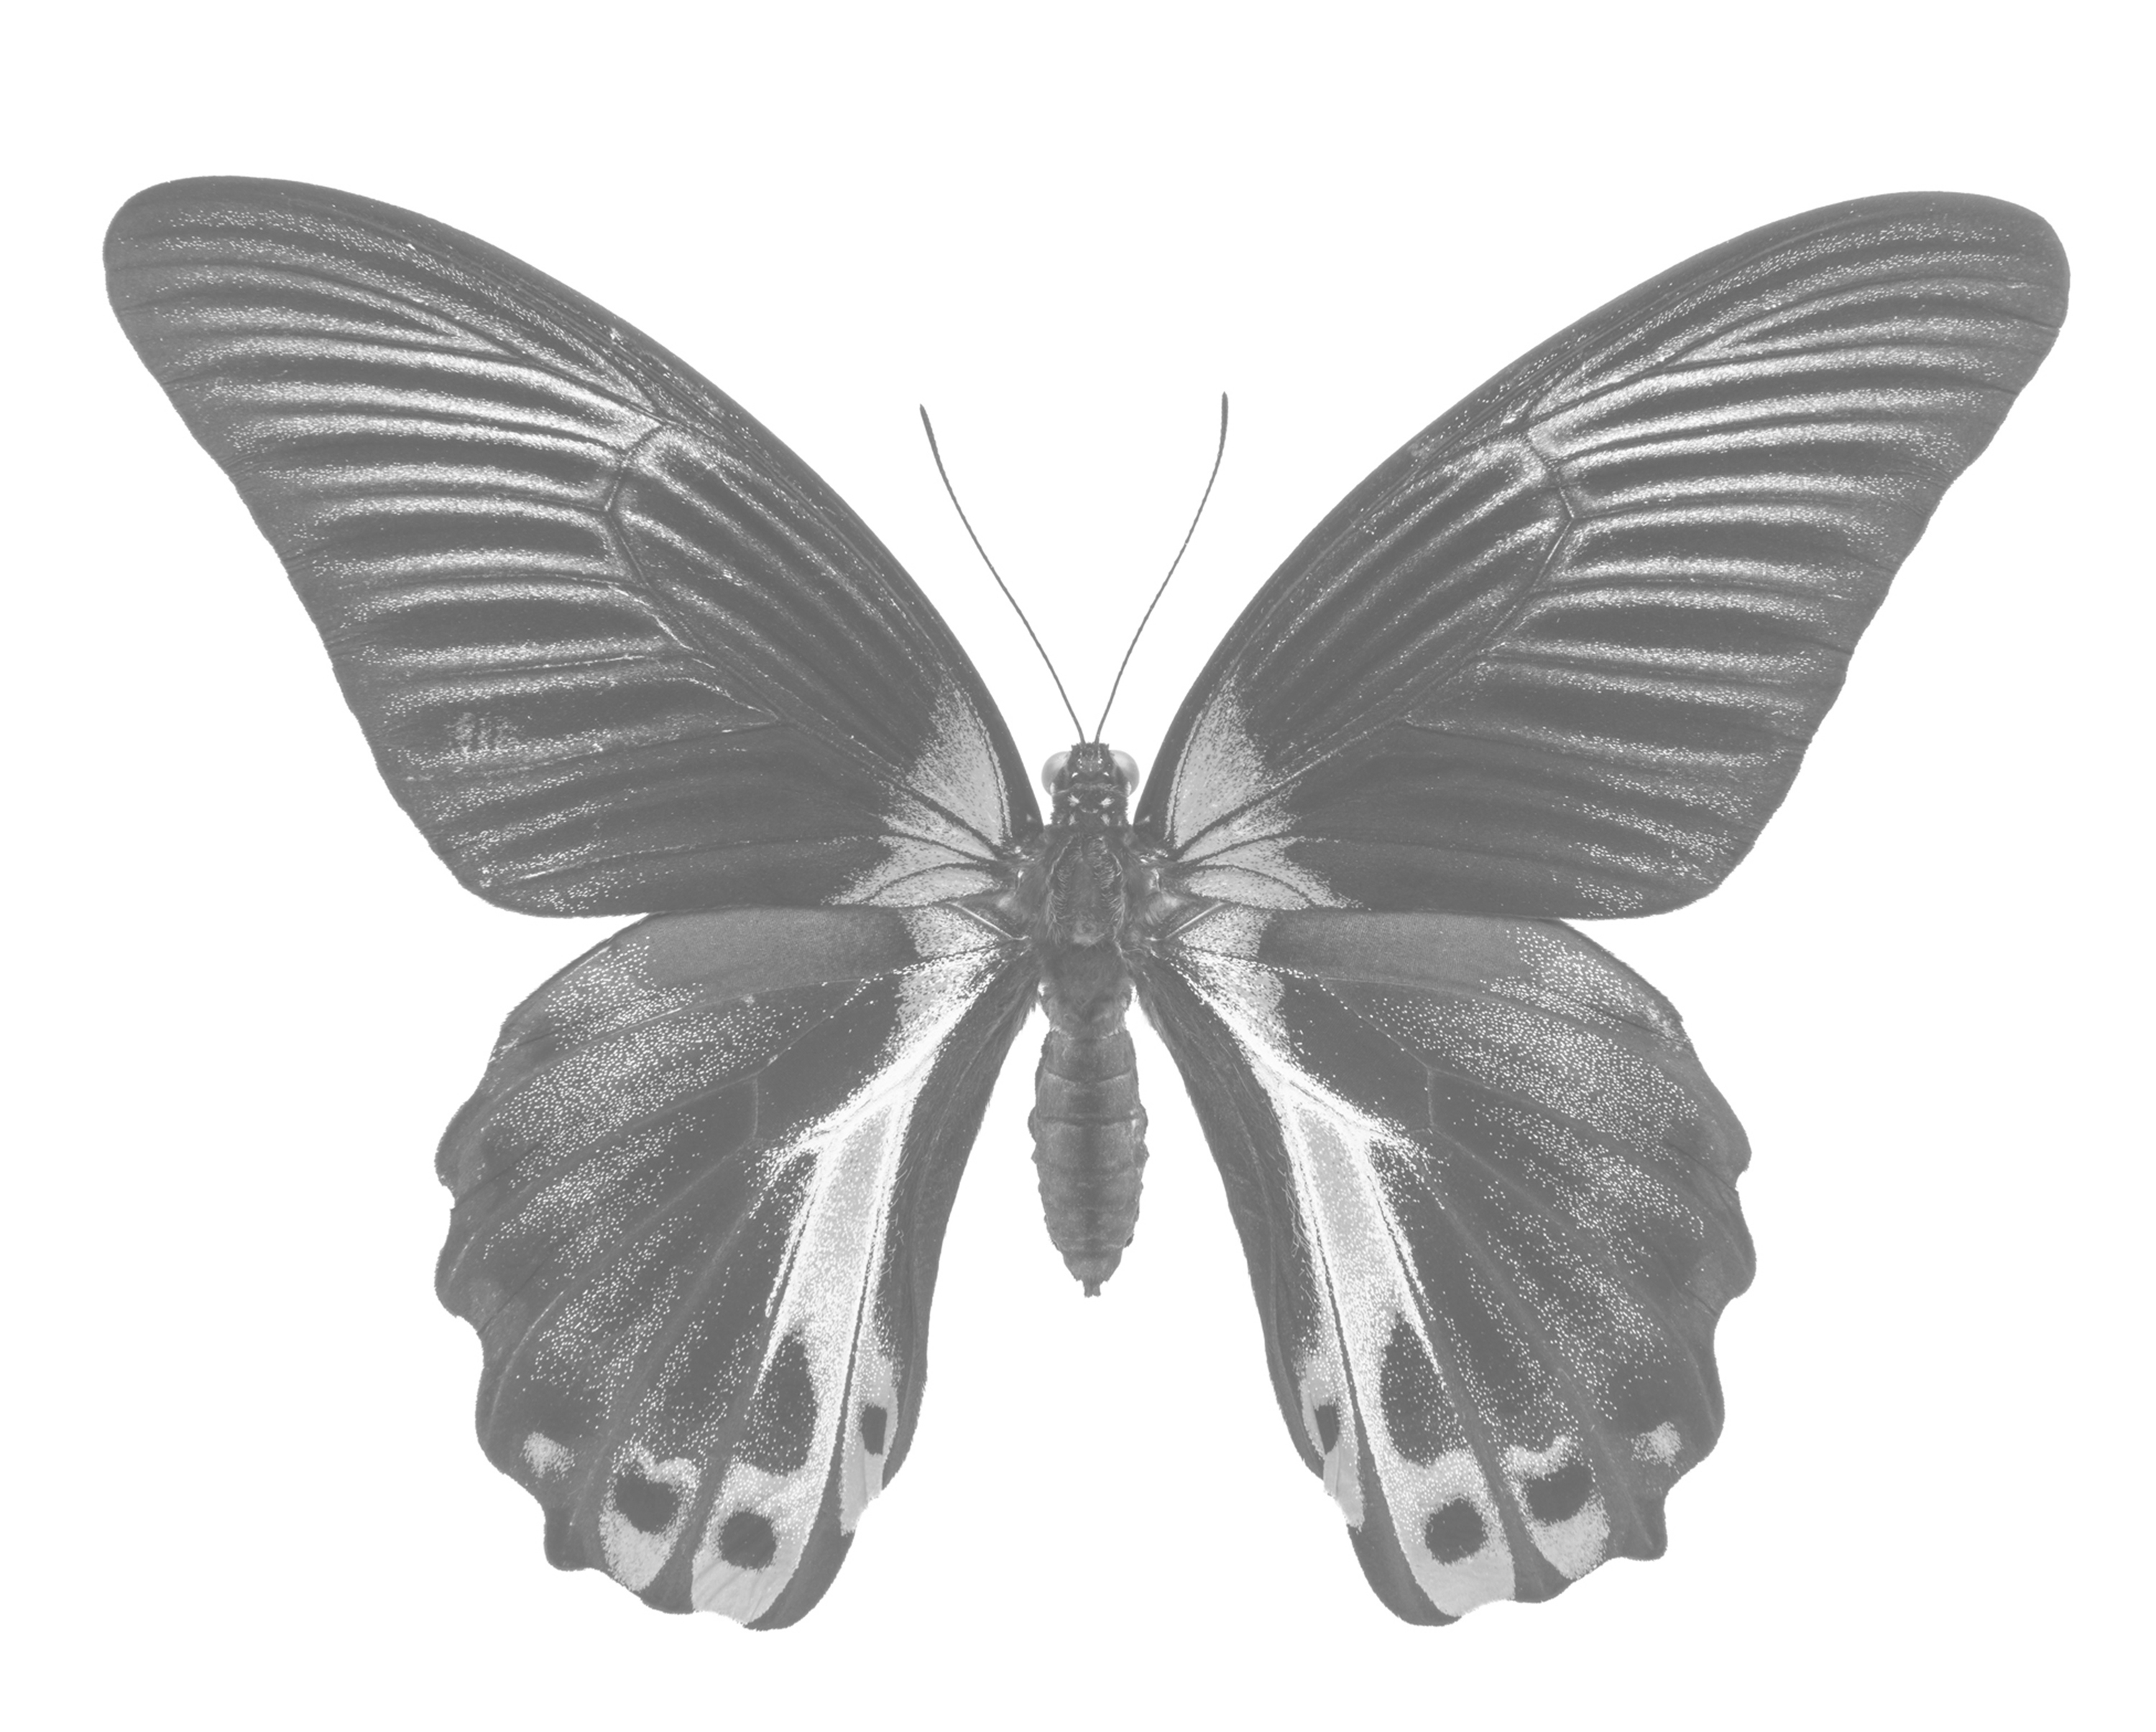 Lifelike Grayscale Butterflies